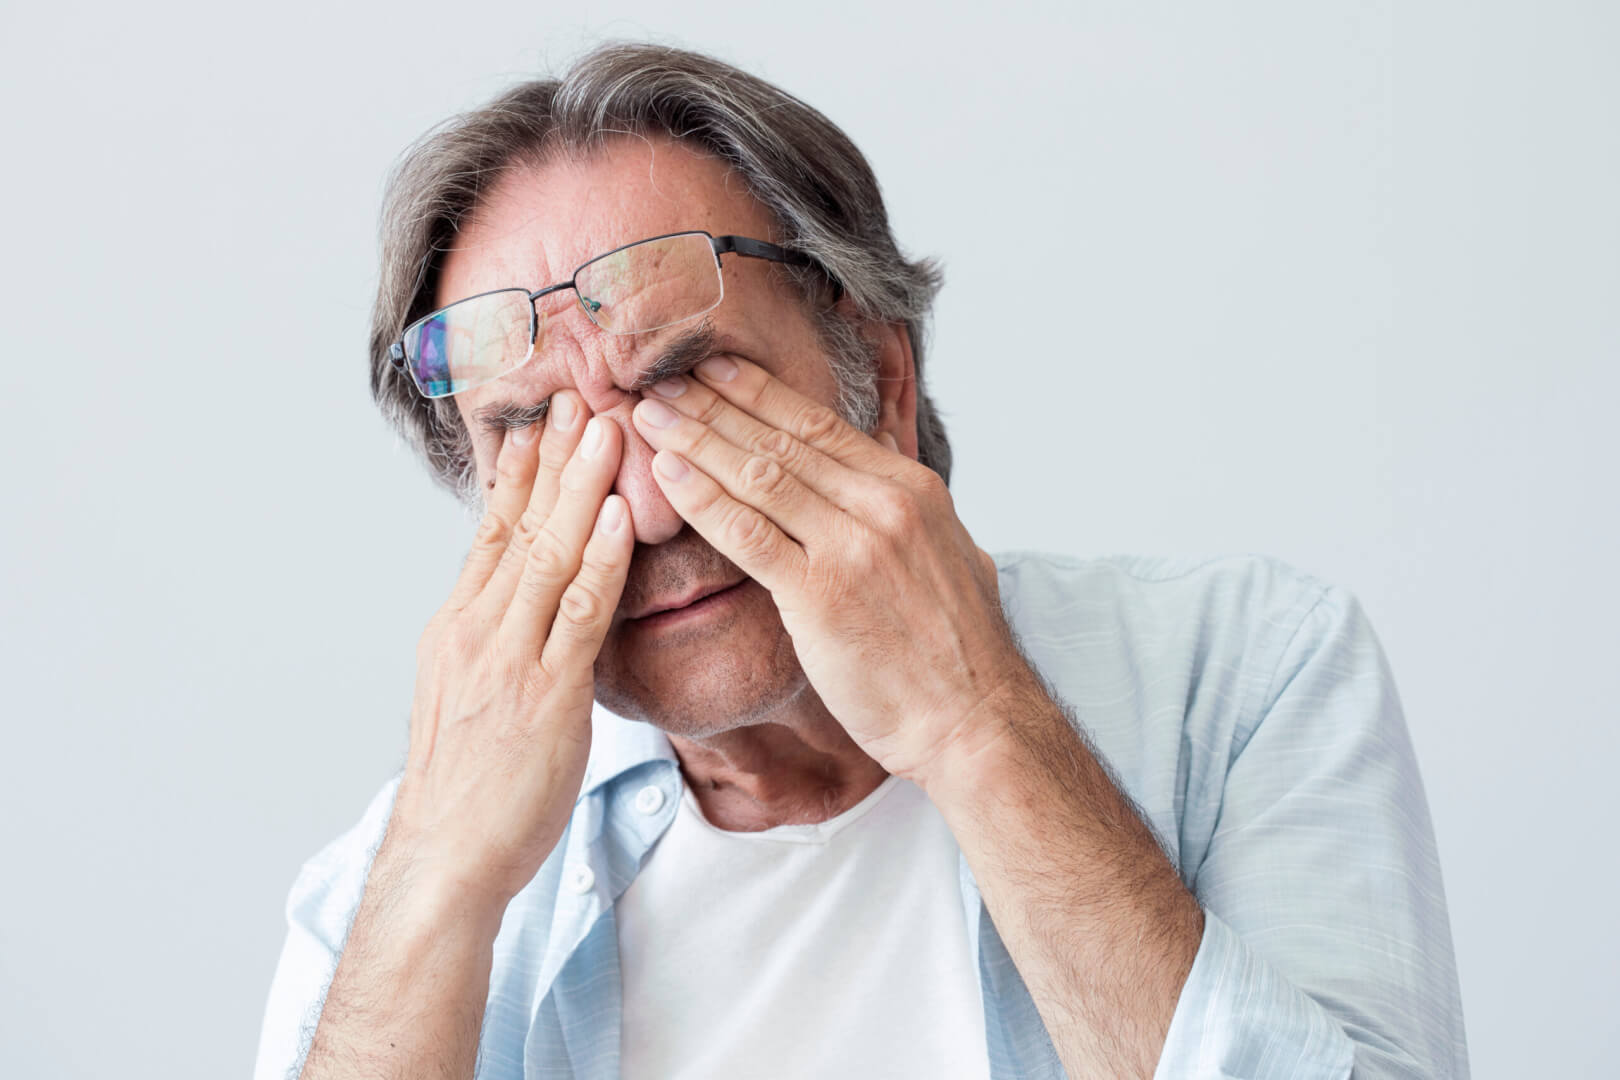 Un hombre mayor se frota los ojos como señal de fatiga